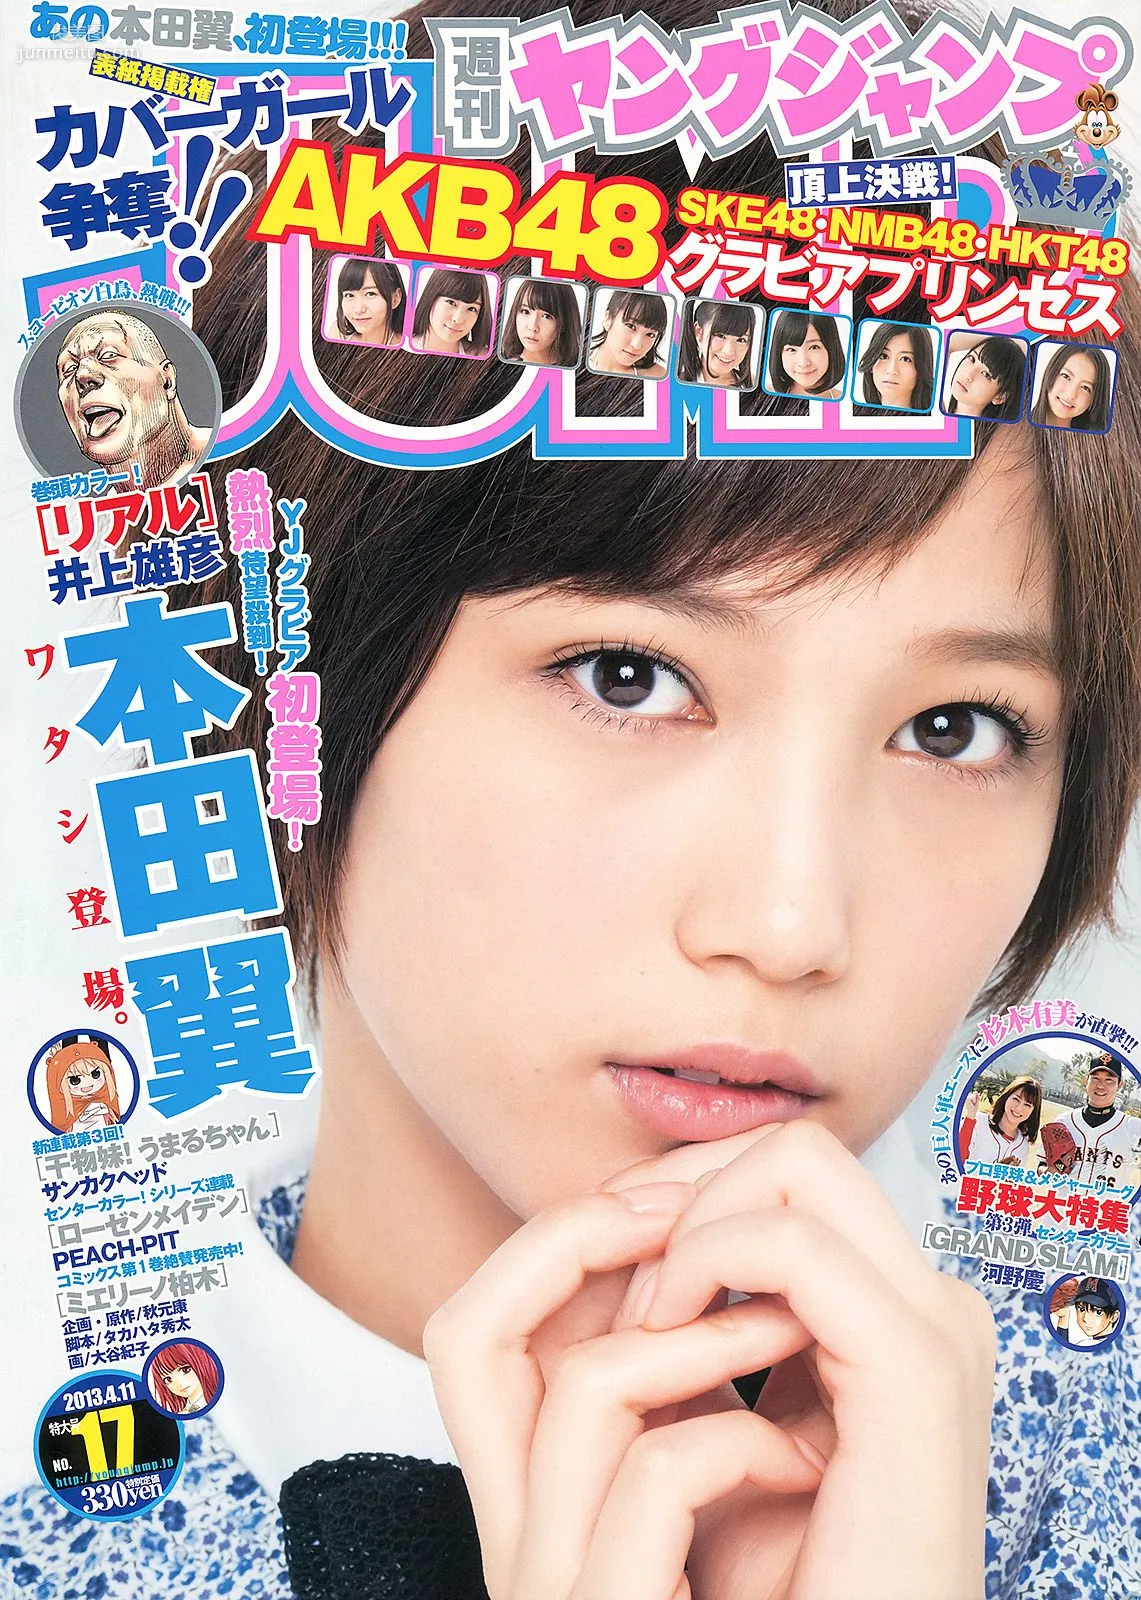 本田翼 杉本有美 48グループ [Weekly Young Jump] 2013年No.17 写真杂志1